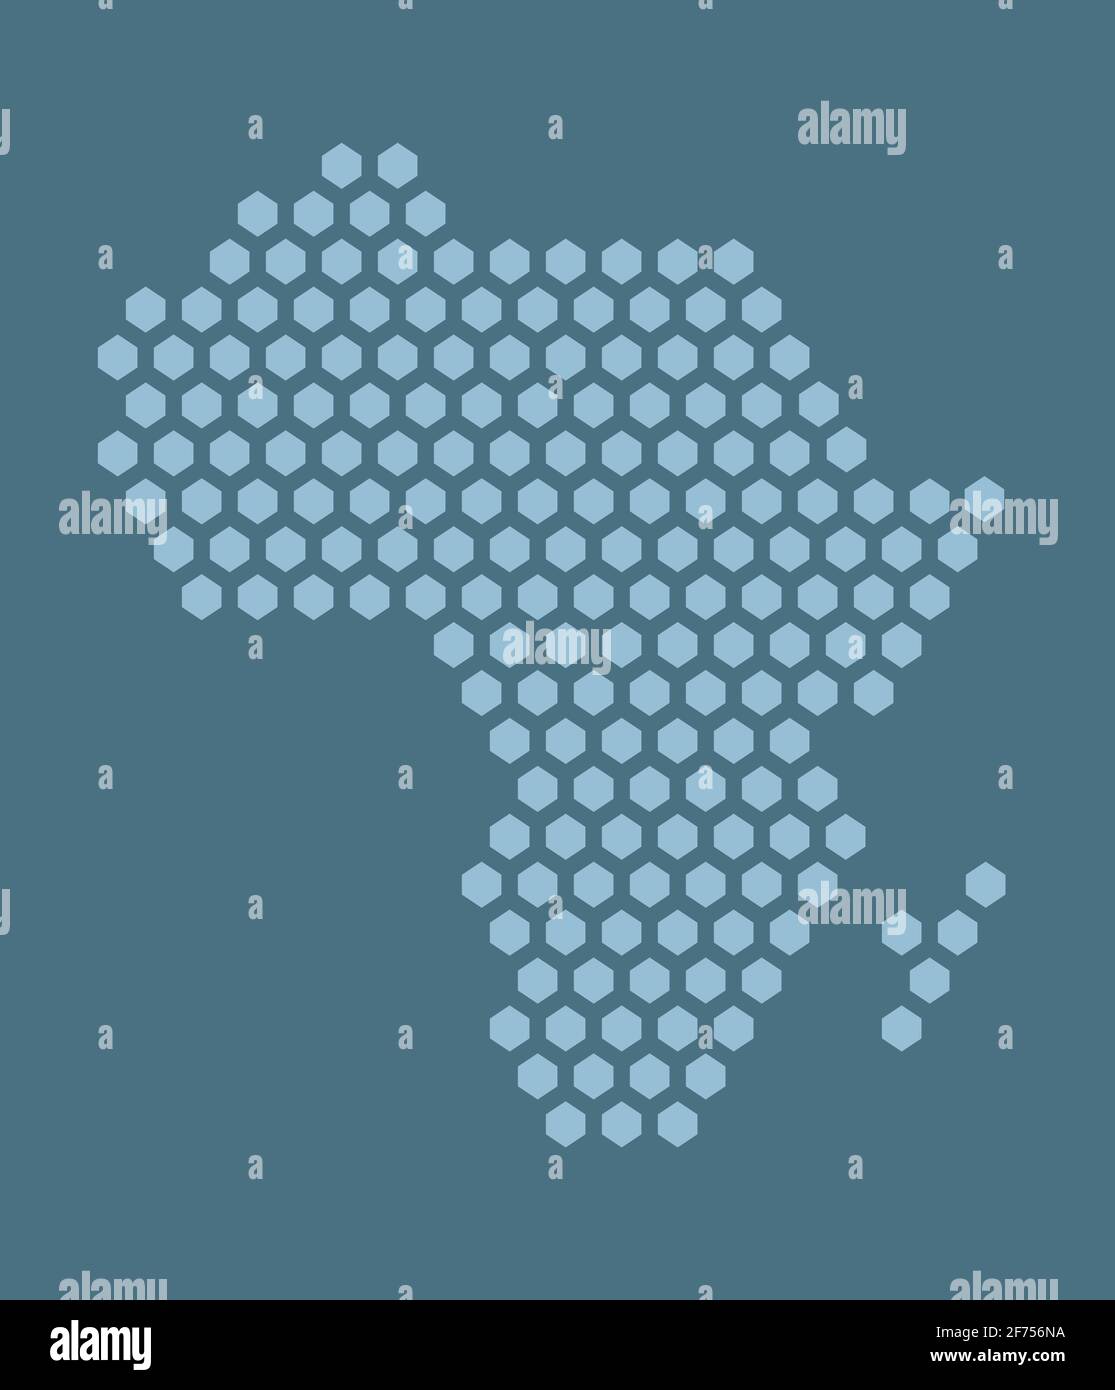 Carte bleue de pixels hexagonaux de l'Afrique. Illustration vectorielle continent africain carte hexagonale mosaïque en pointillés. Frontière administrative, composition des terres. Illustration de Vecteur